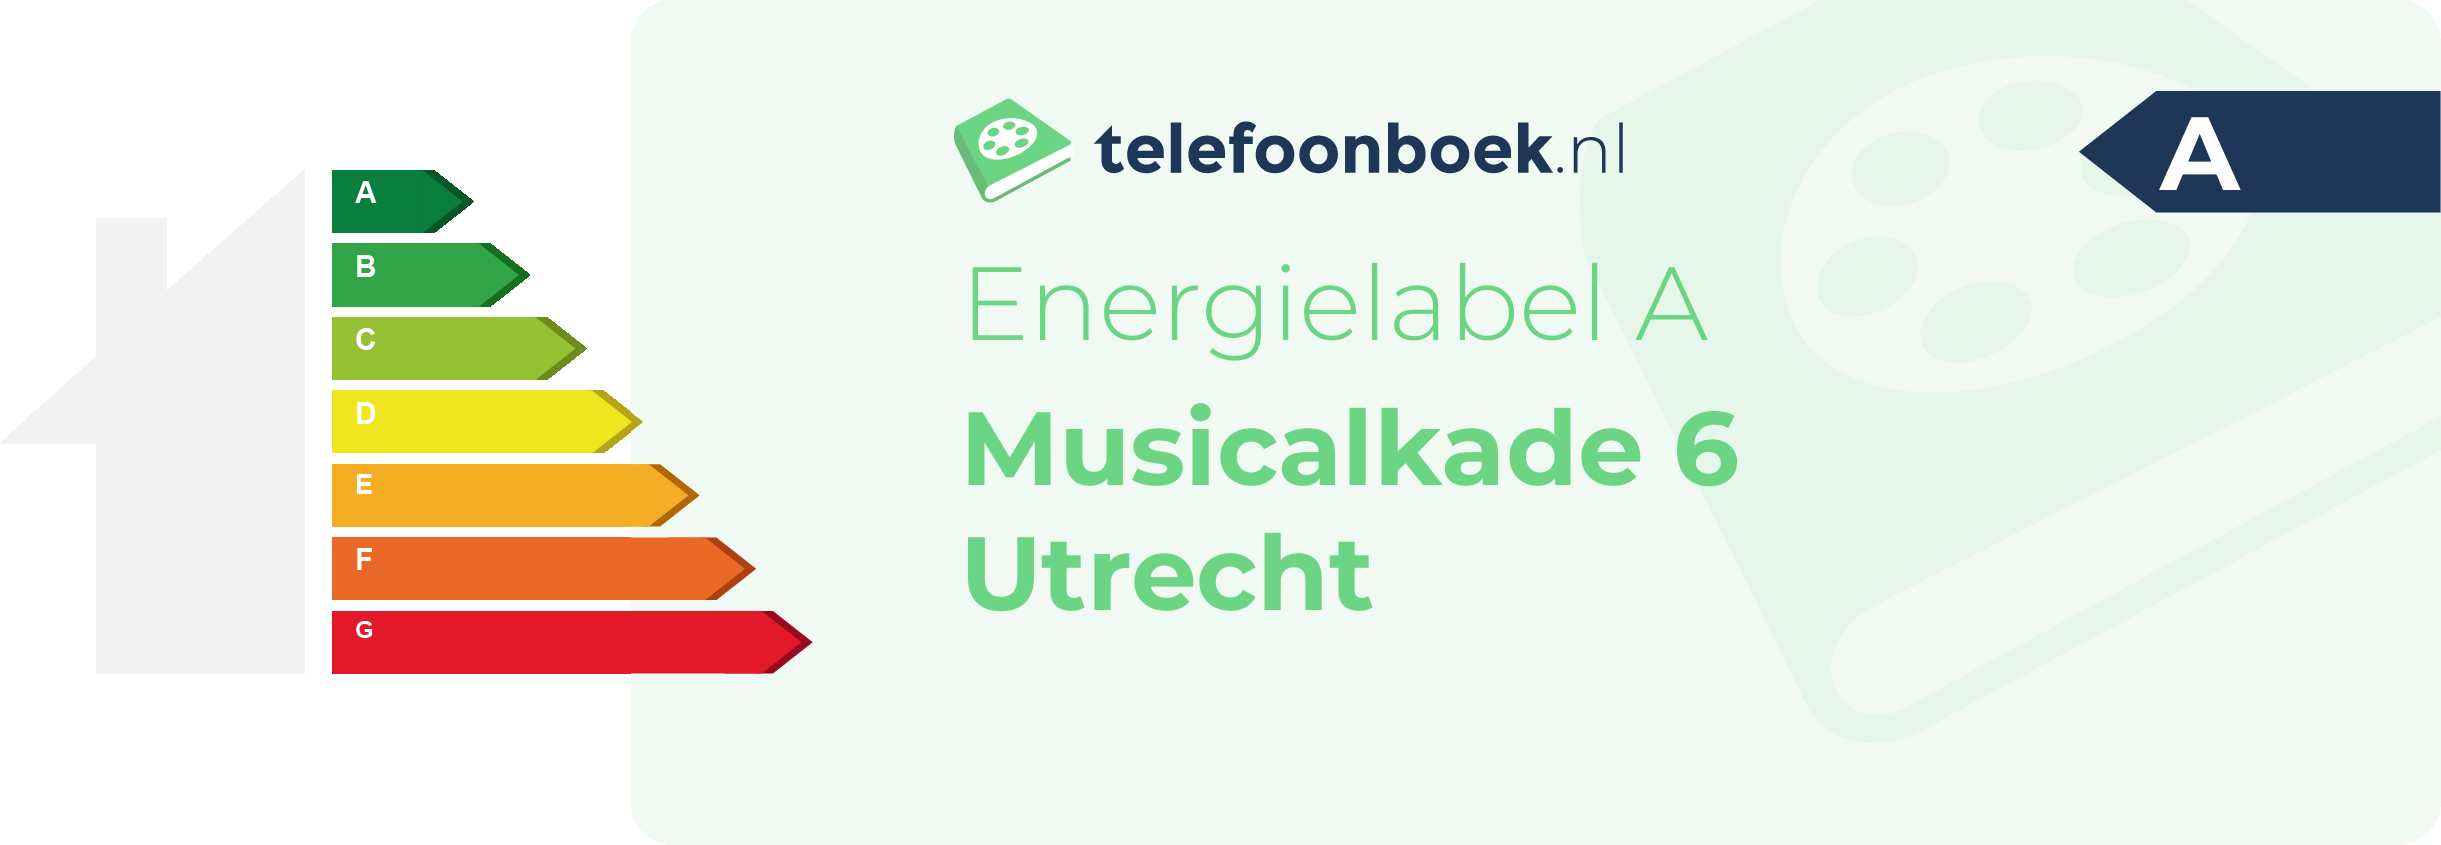 Energielabel Musicalkade 6 Utrecht